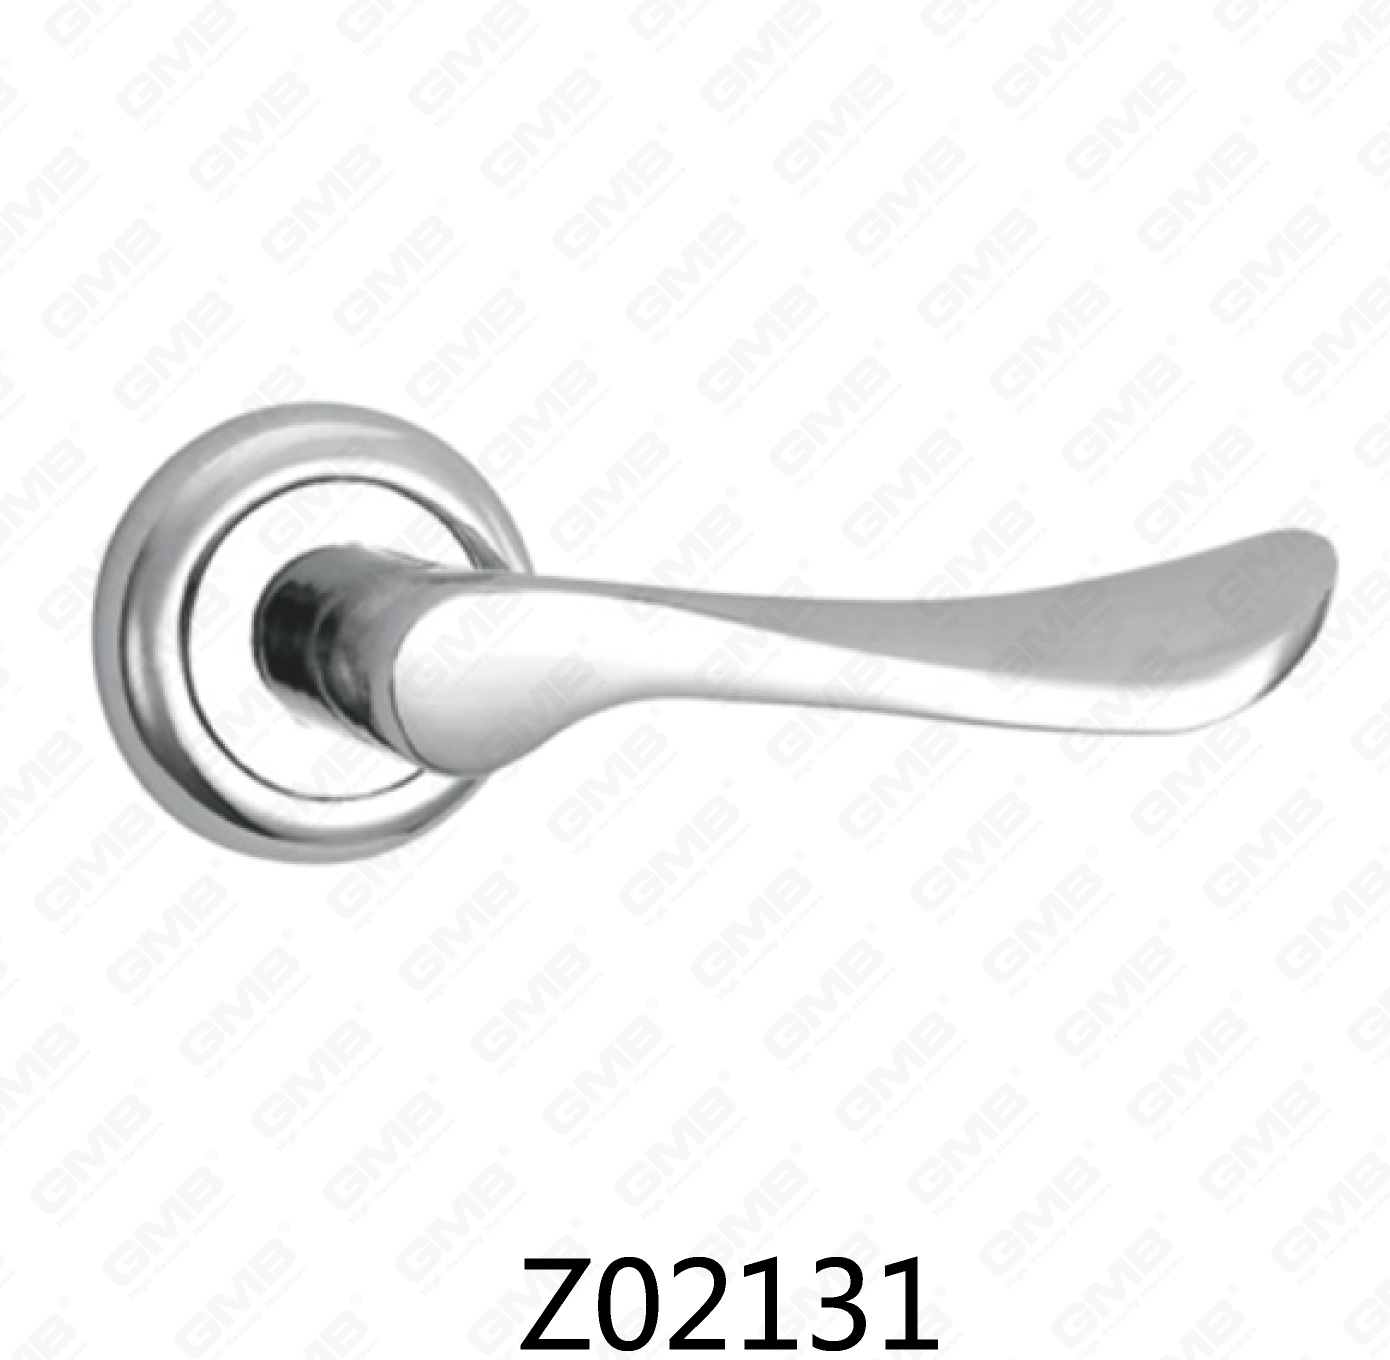 ידית דלת רוזטה מסגסוגת אבץ של Zamak עם רוזטה עגולה (Z02131)